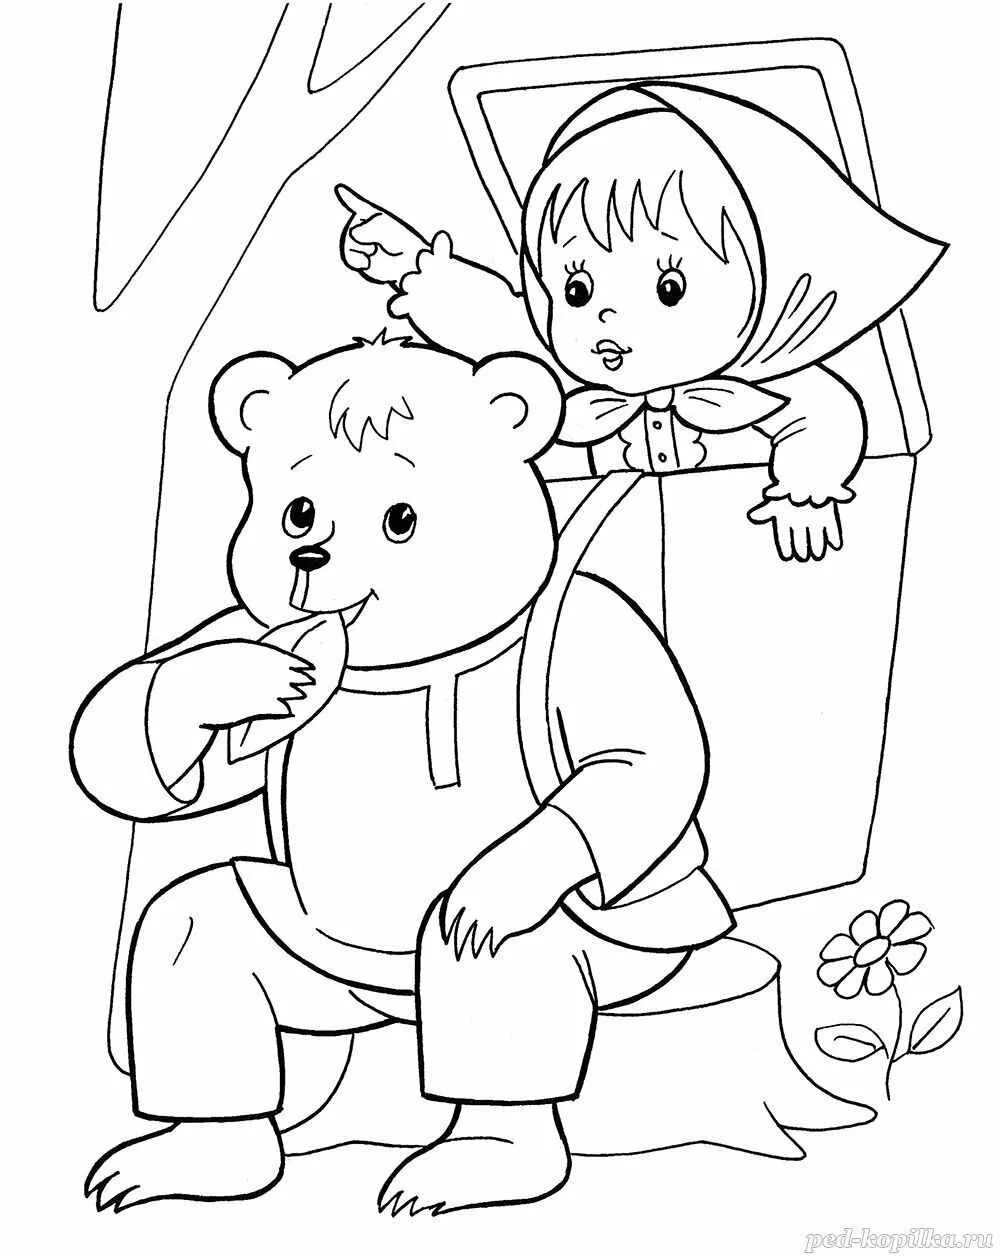 Раскраски по сказкам для детей 3 4. Сказка Маша и медведь раскраска для малышей. Машенька и медведь сказка раскраска для детей. Маша из сказки Маша и медведь раскраска. Сказка Маша и медведь разукрашка.